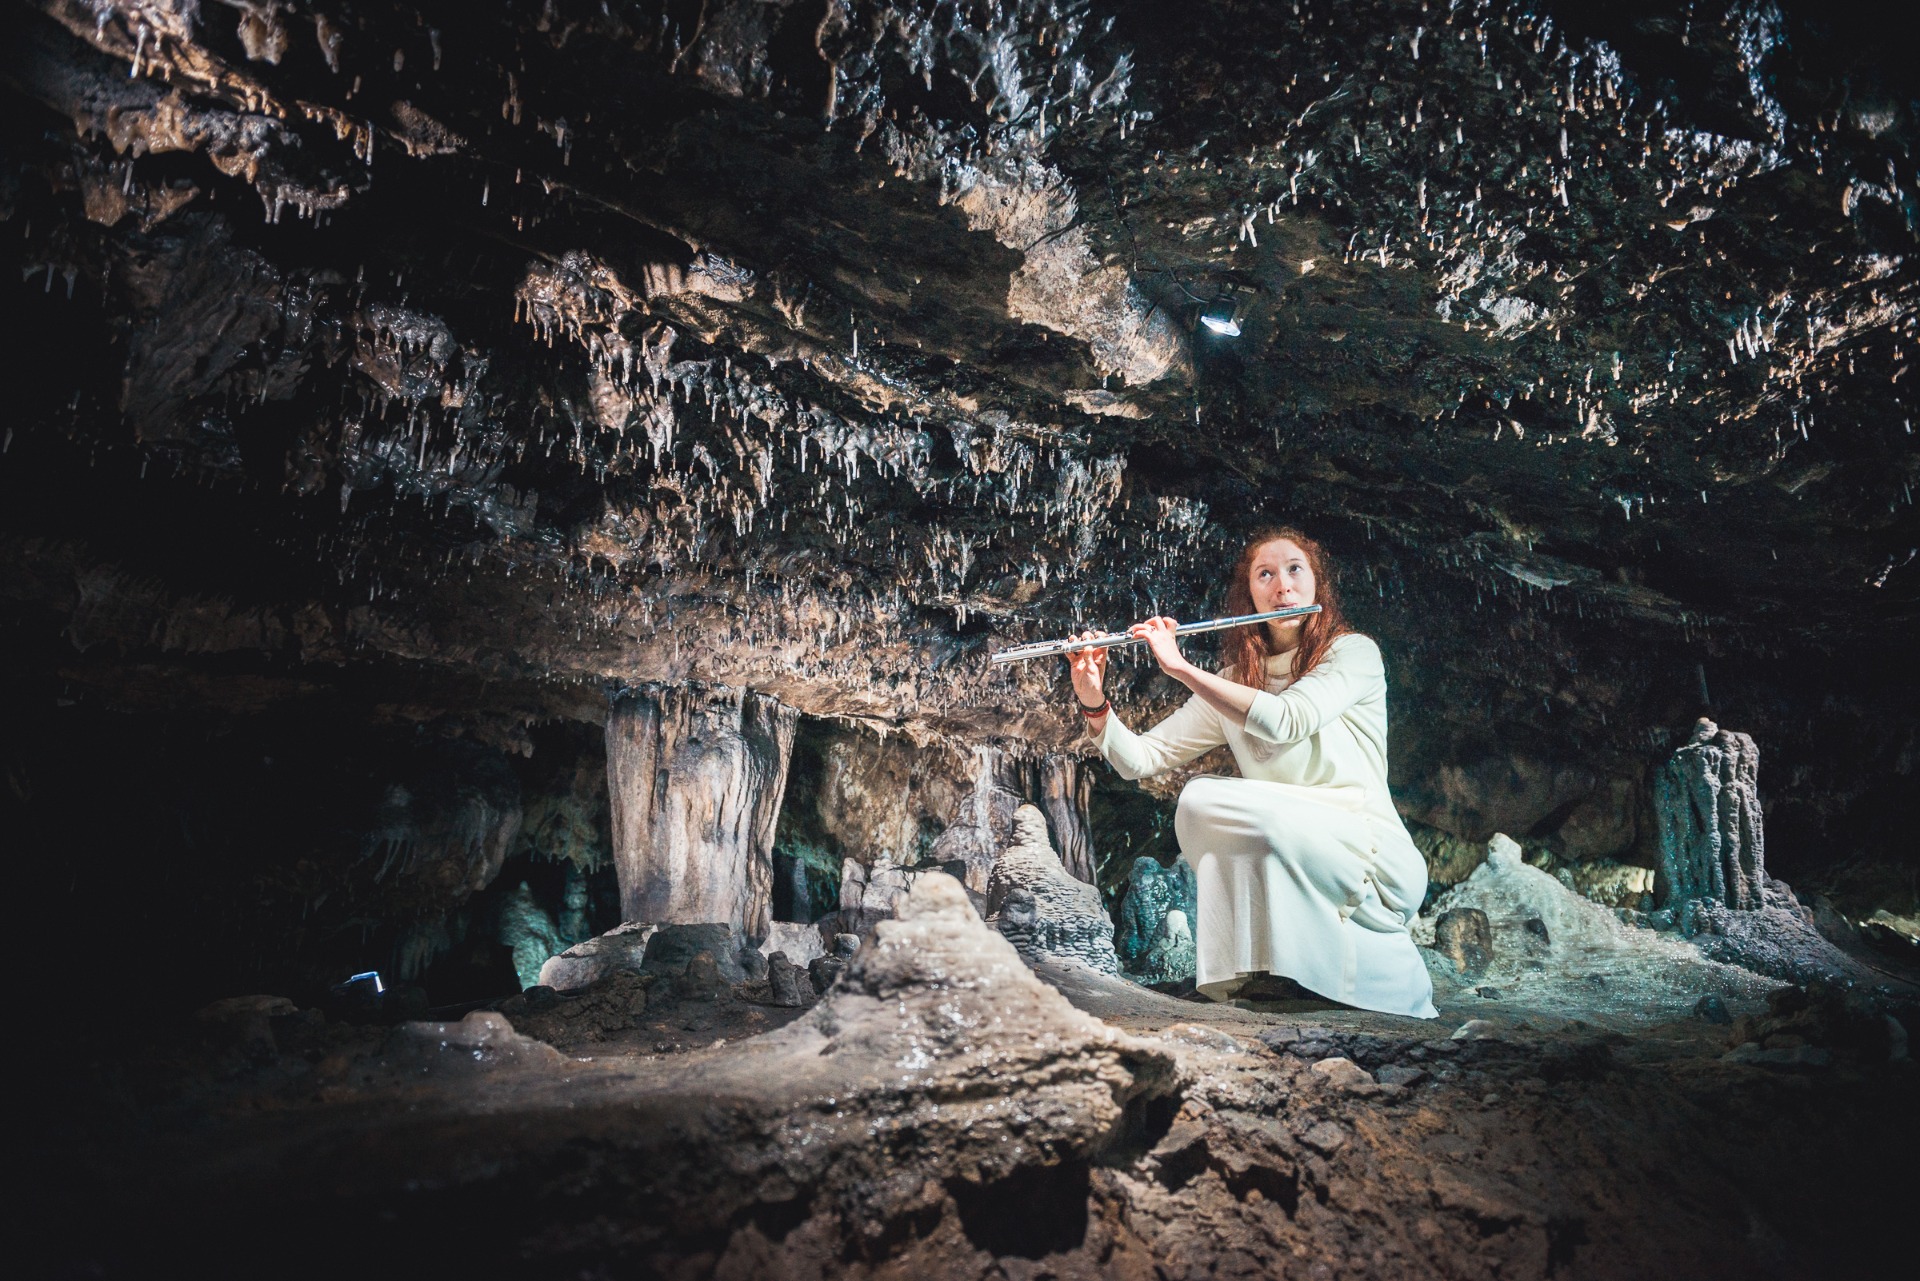 Han-musique - La Grotte enchantée aux sons de la flûte traversière